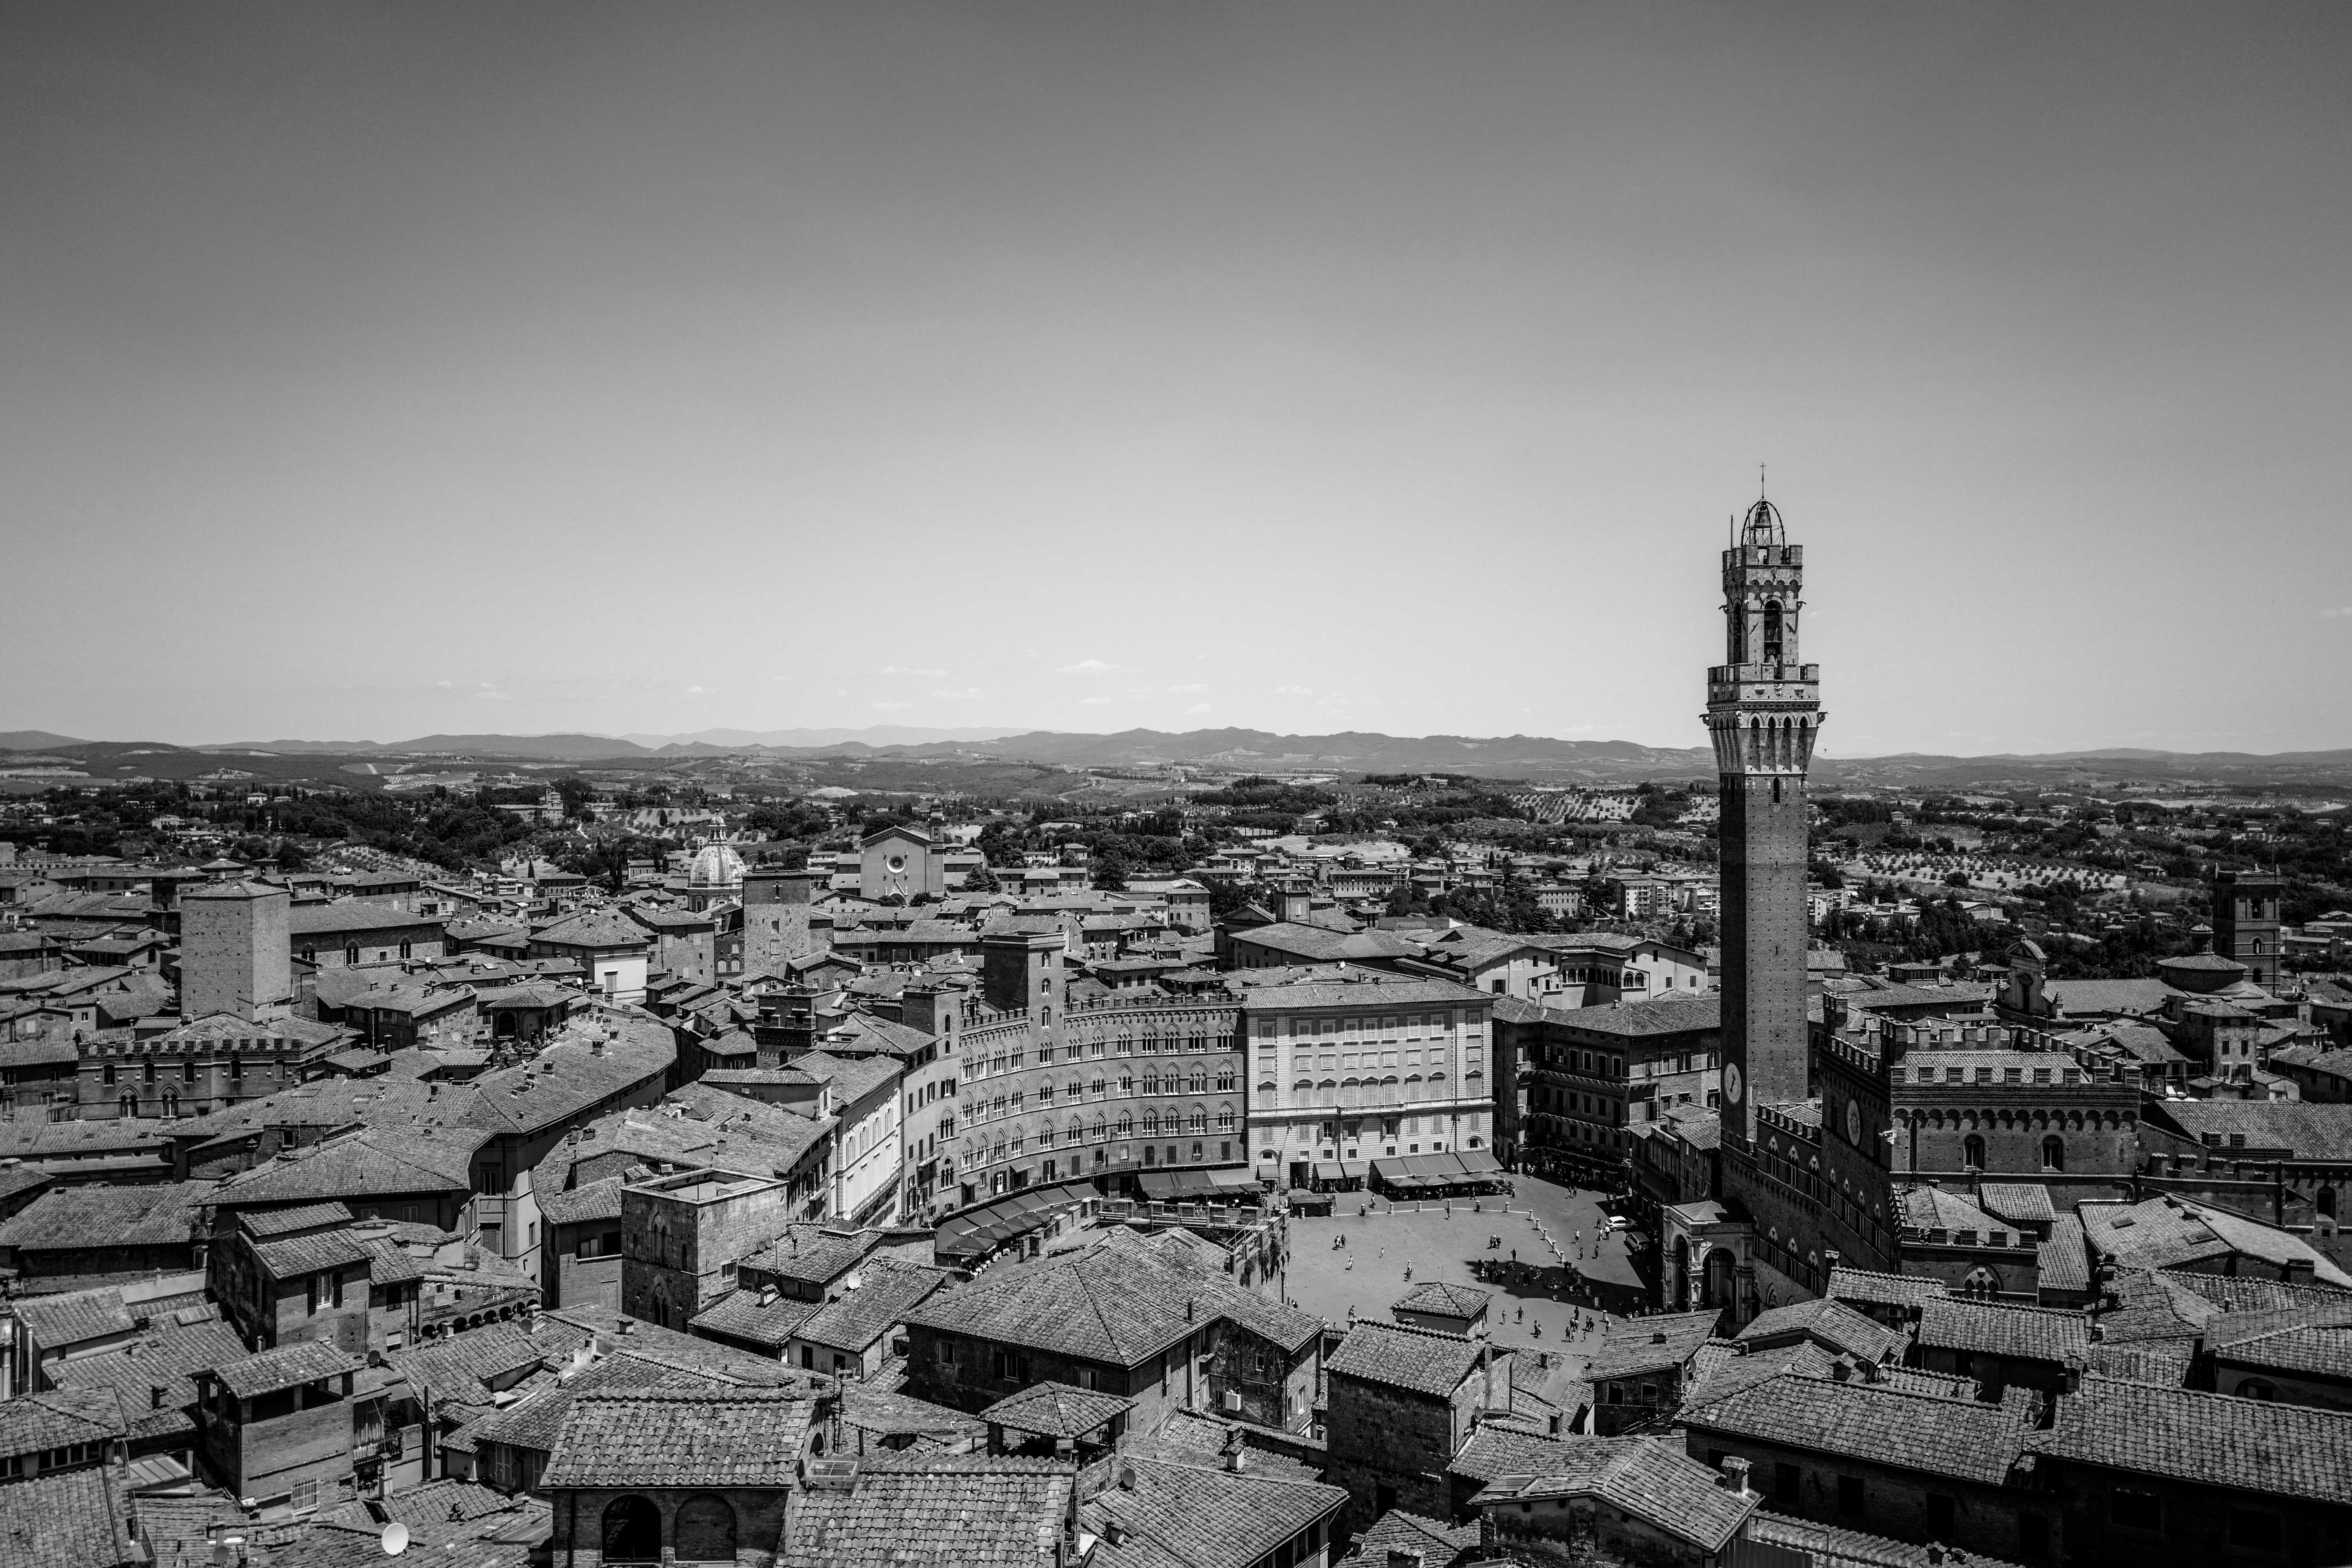 Auf dem Bild sieht man die Innenstadt von Siena als schwarweiss Aufnahme von weiter oben aufgenommen